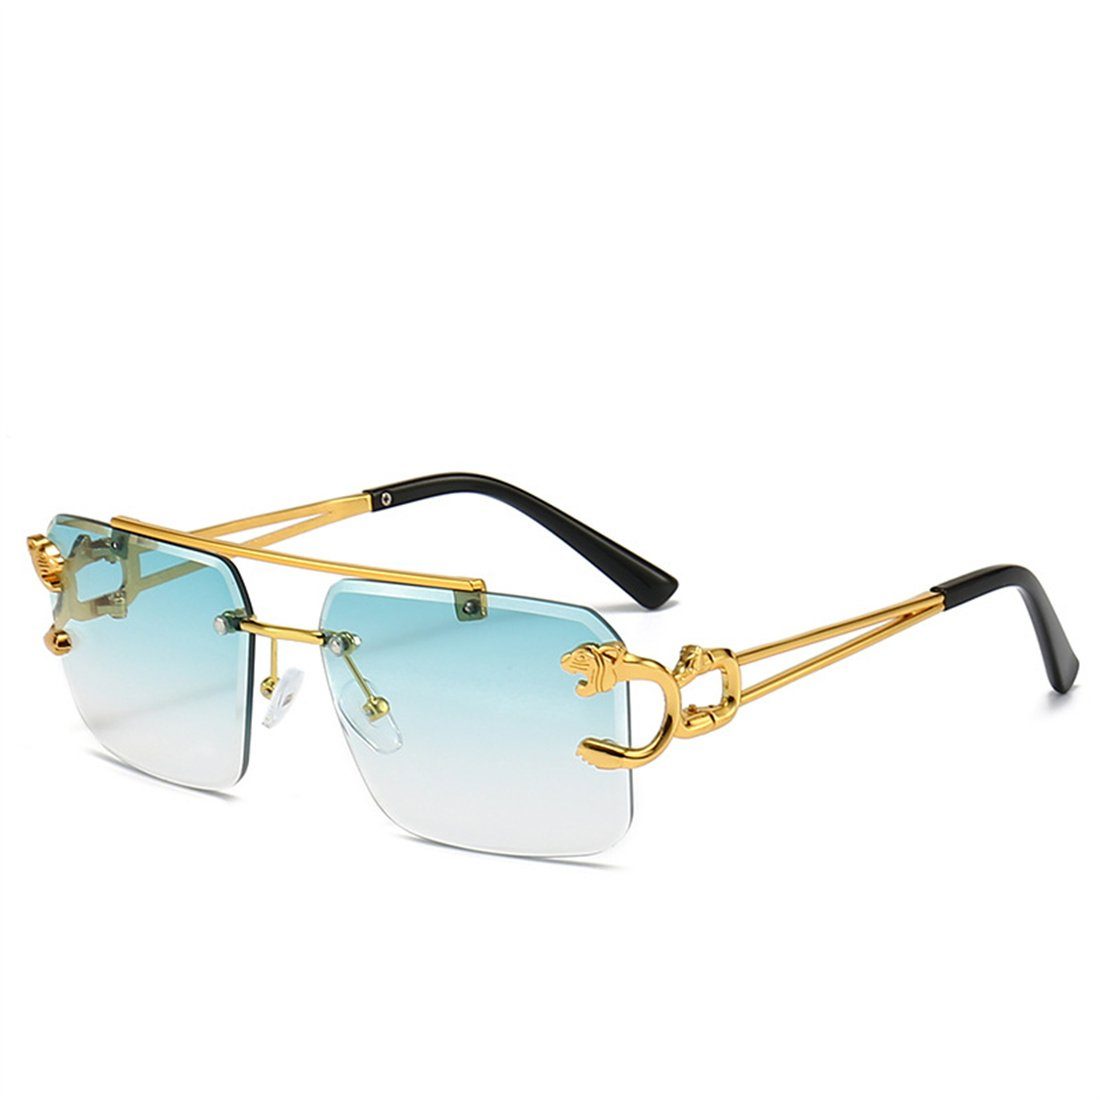 DÖRÖY Sonnenbrille Damen-Retro-Sonnenbrille ohne Rand, Herren-Sonnenbrille für draußen grün